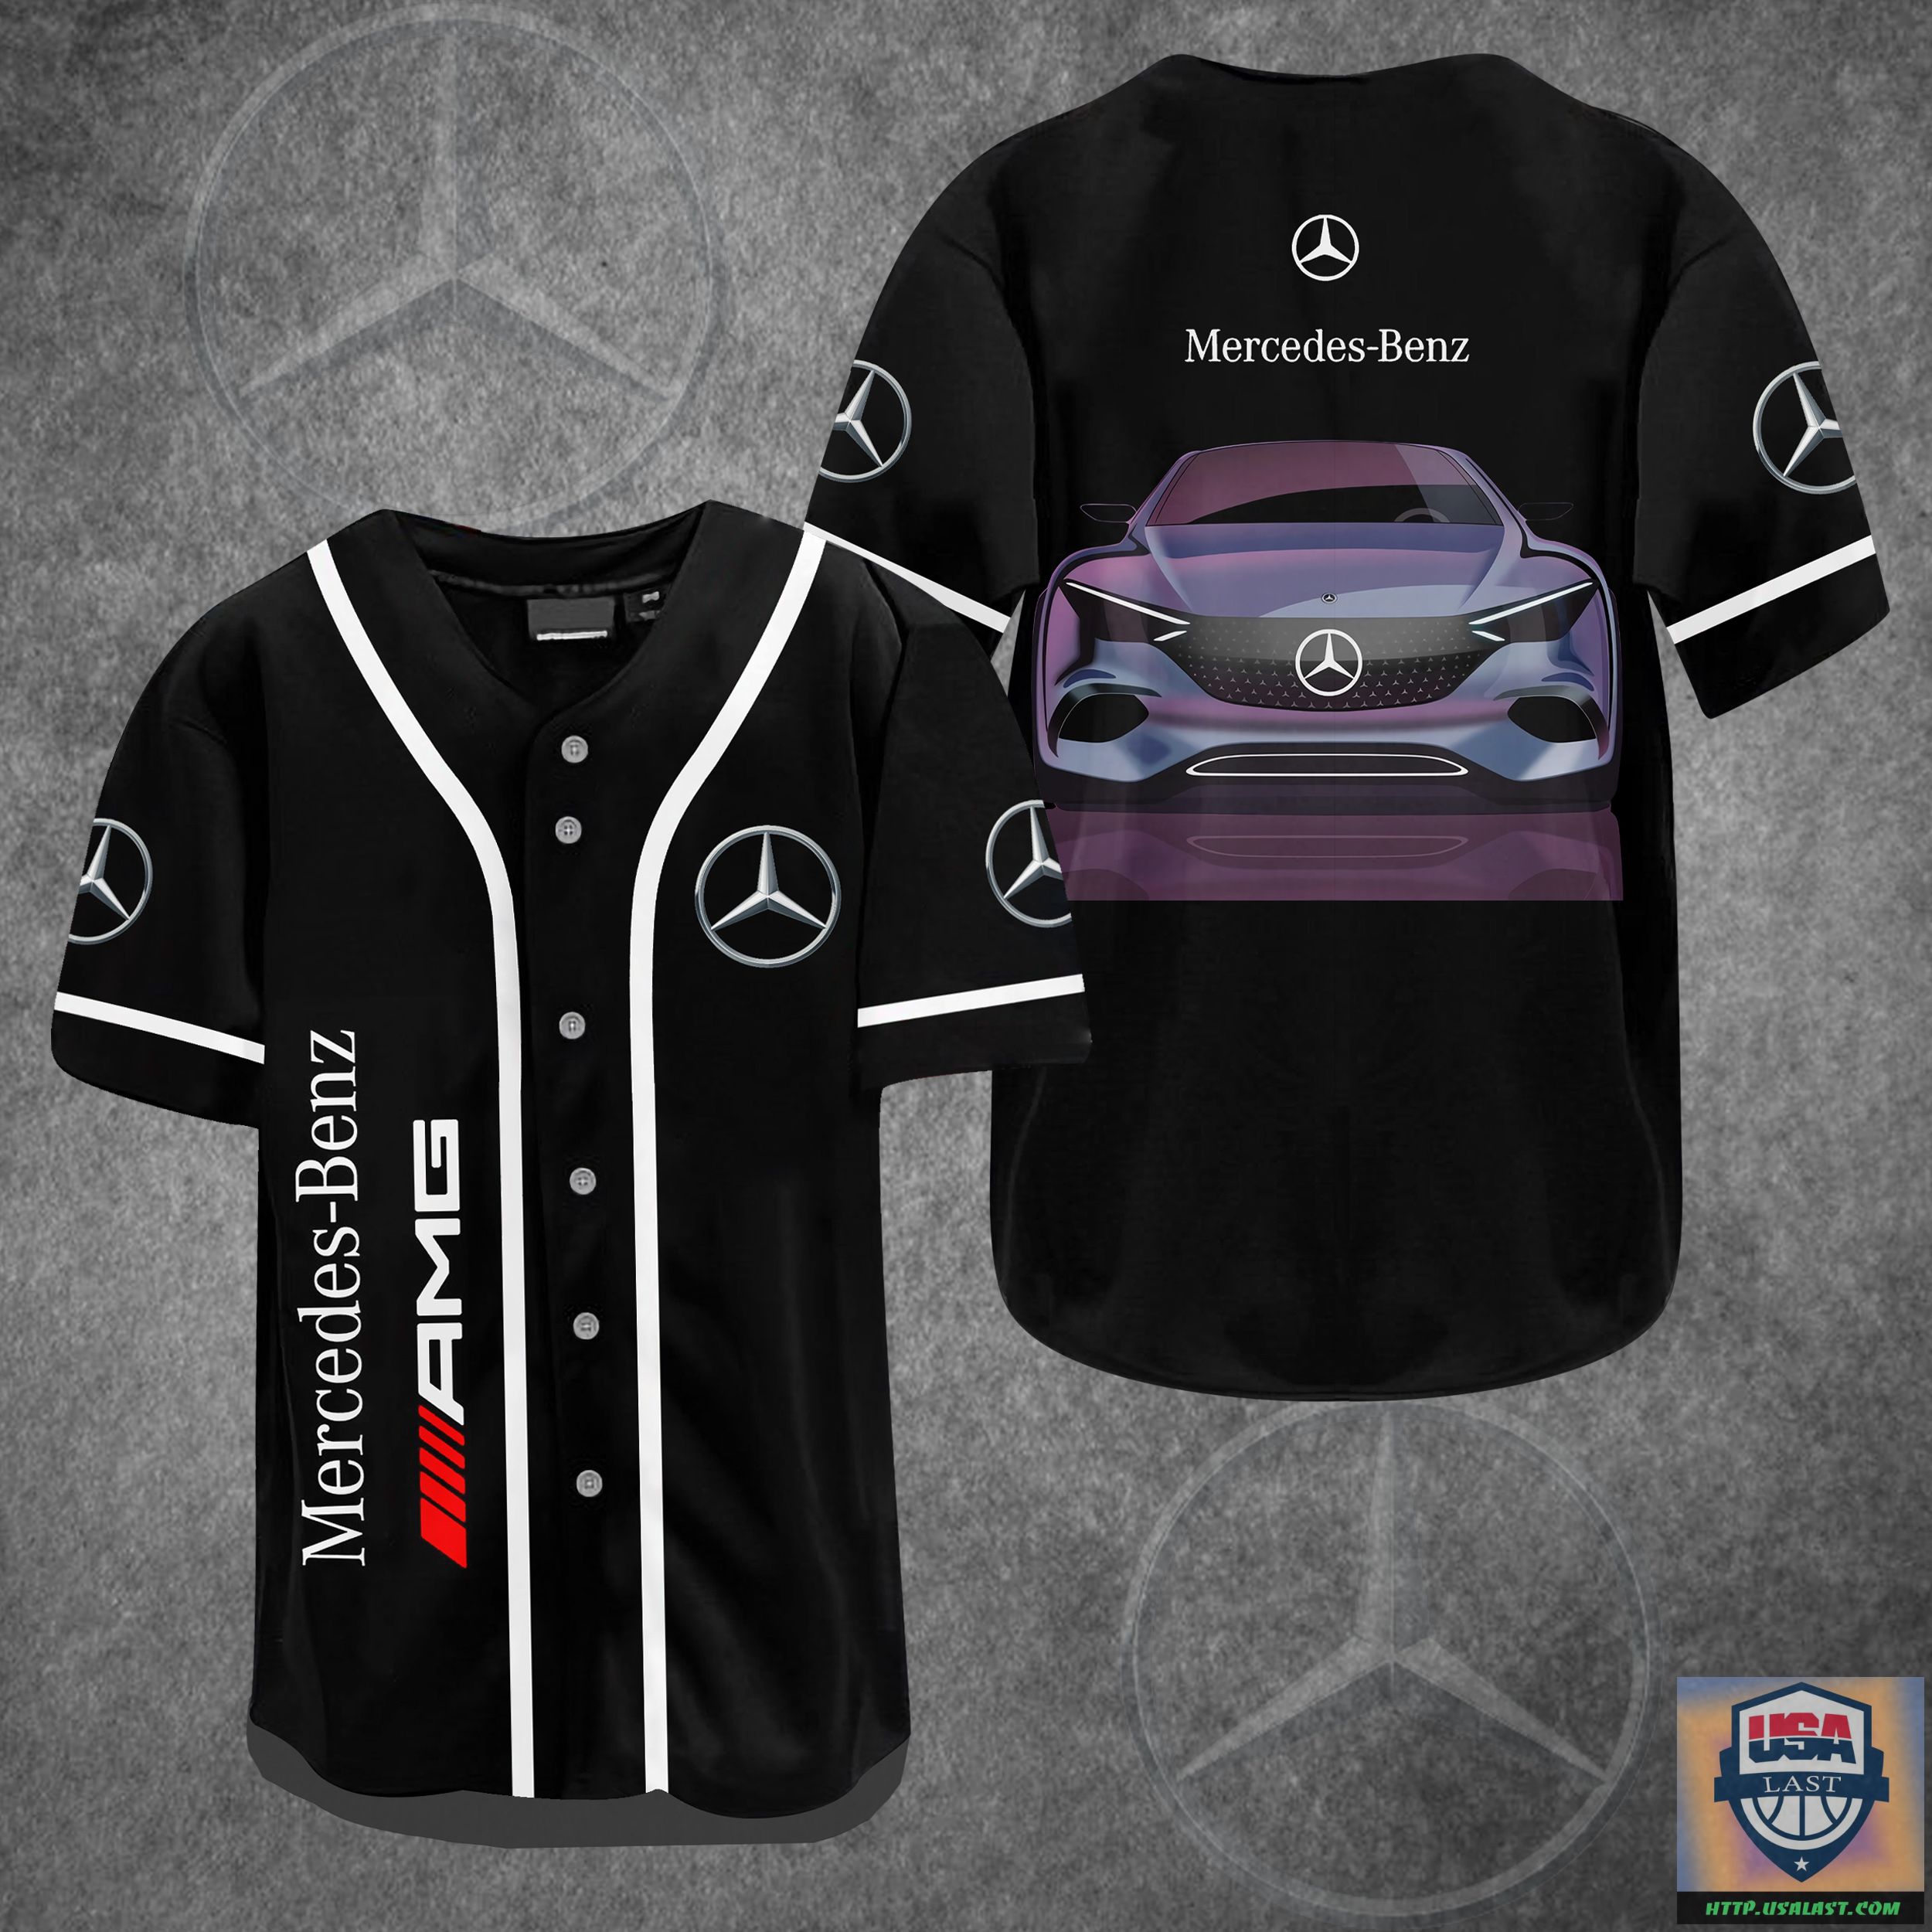 aMwmSYyA-T220722-01xxxMercedes-Benz-AMG-Baseball-Jersey-Shirt.jpg